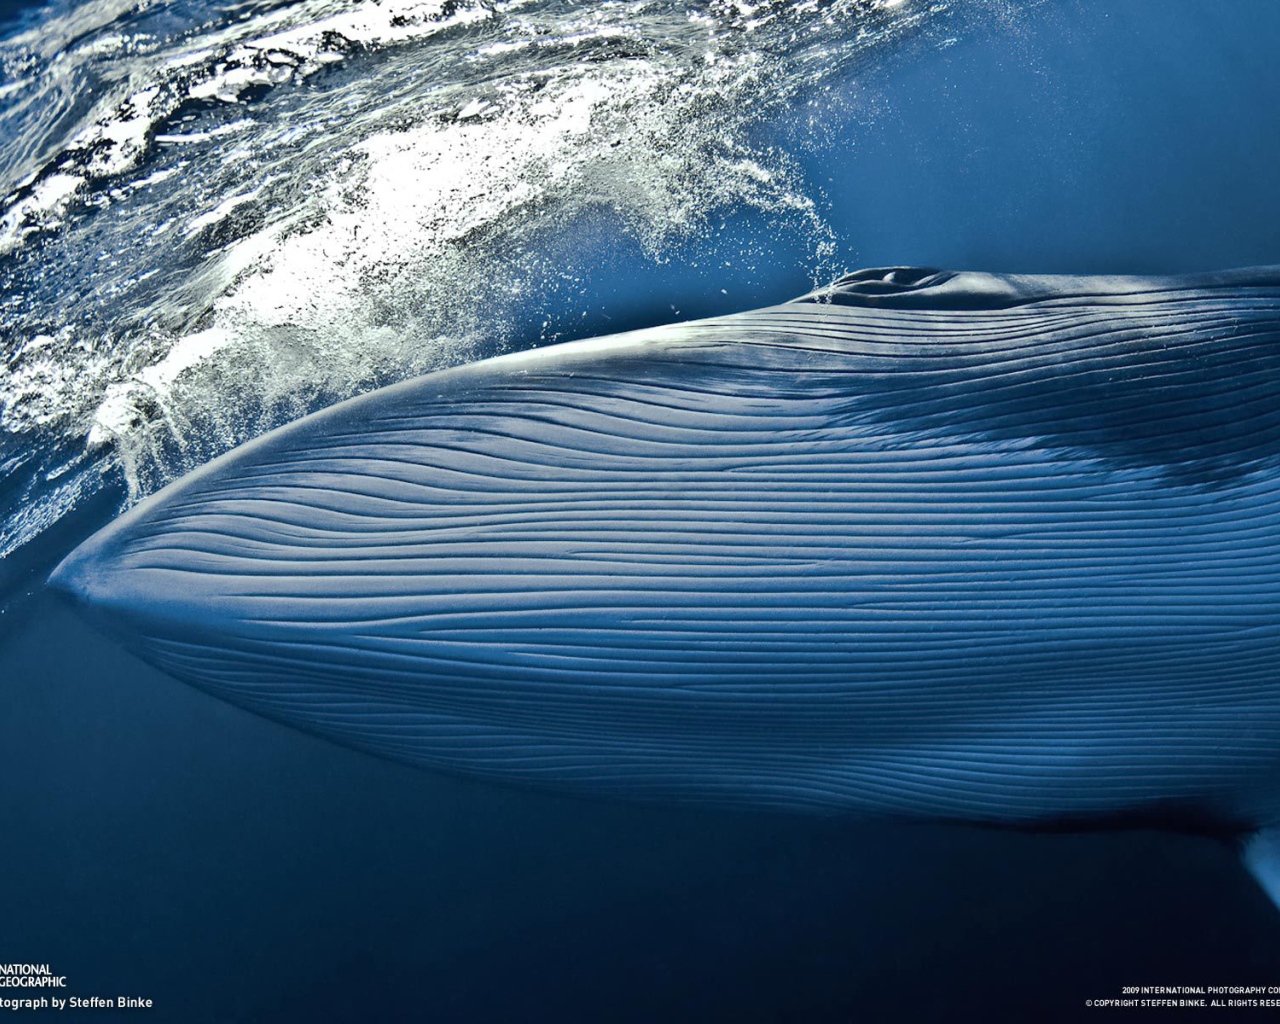 Синий кит под водой